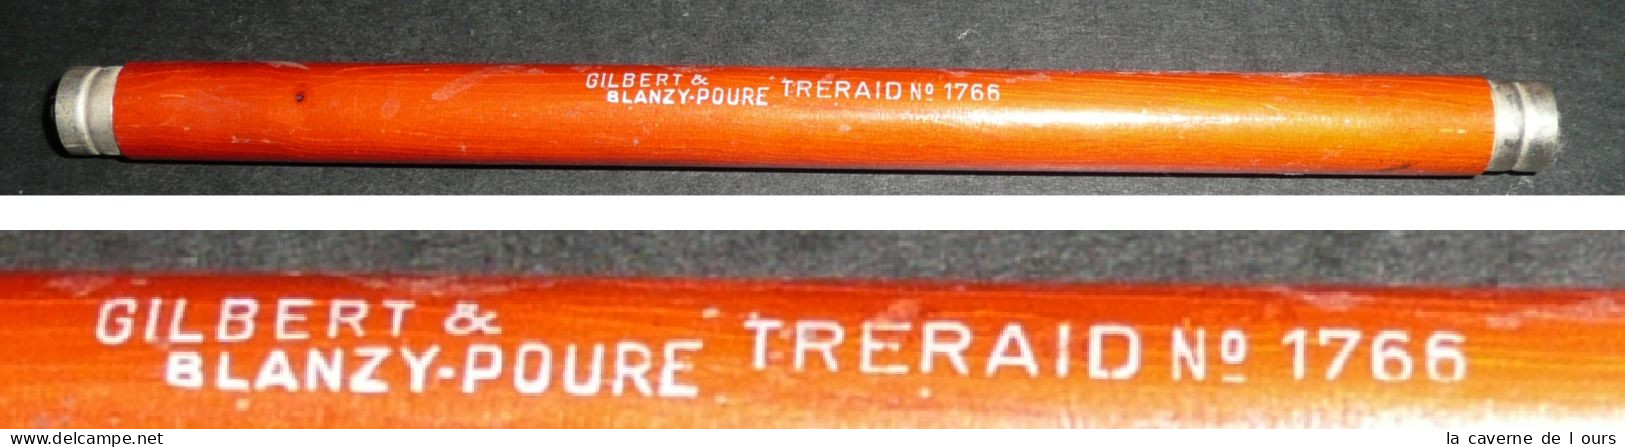 Porte-plume-double En Bois, Gilbert & Blanzy-Pou N° 1766 + Lot 5 Plumes TRERAID - Pens